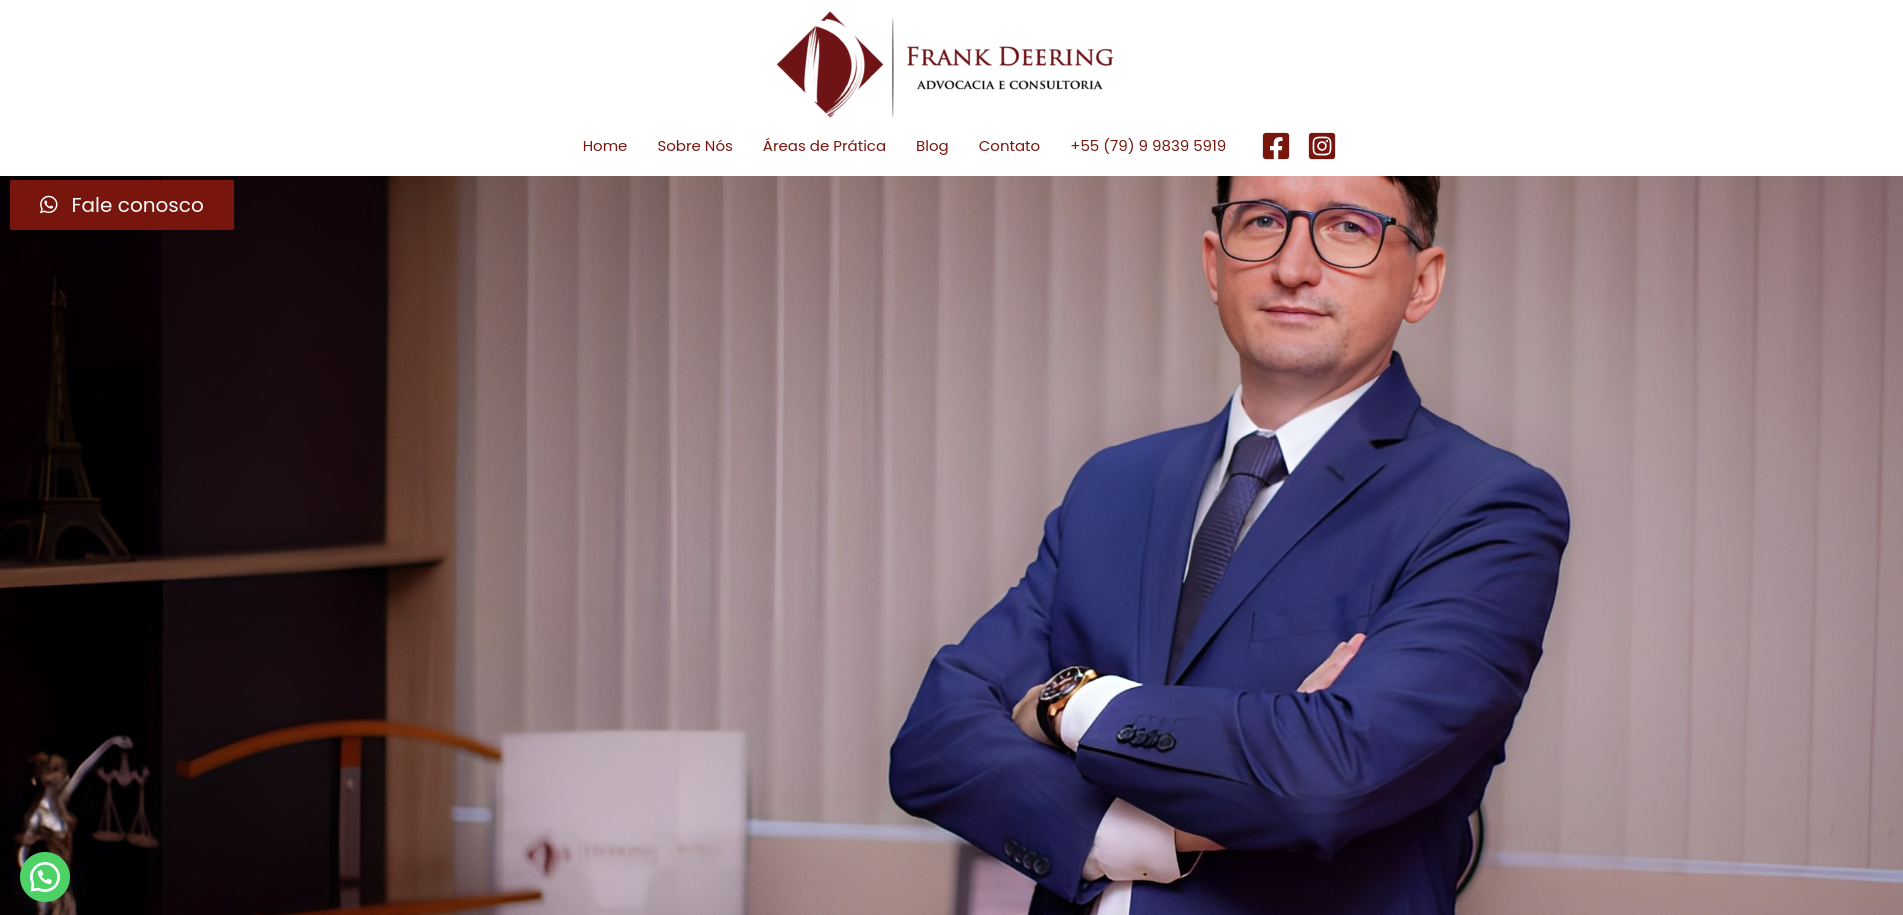 Frank Deering - Advocacia e Consultoria